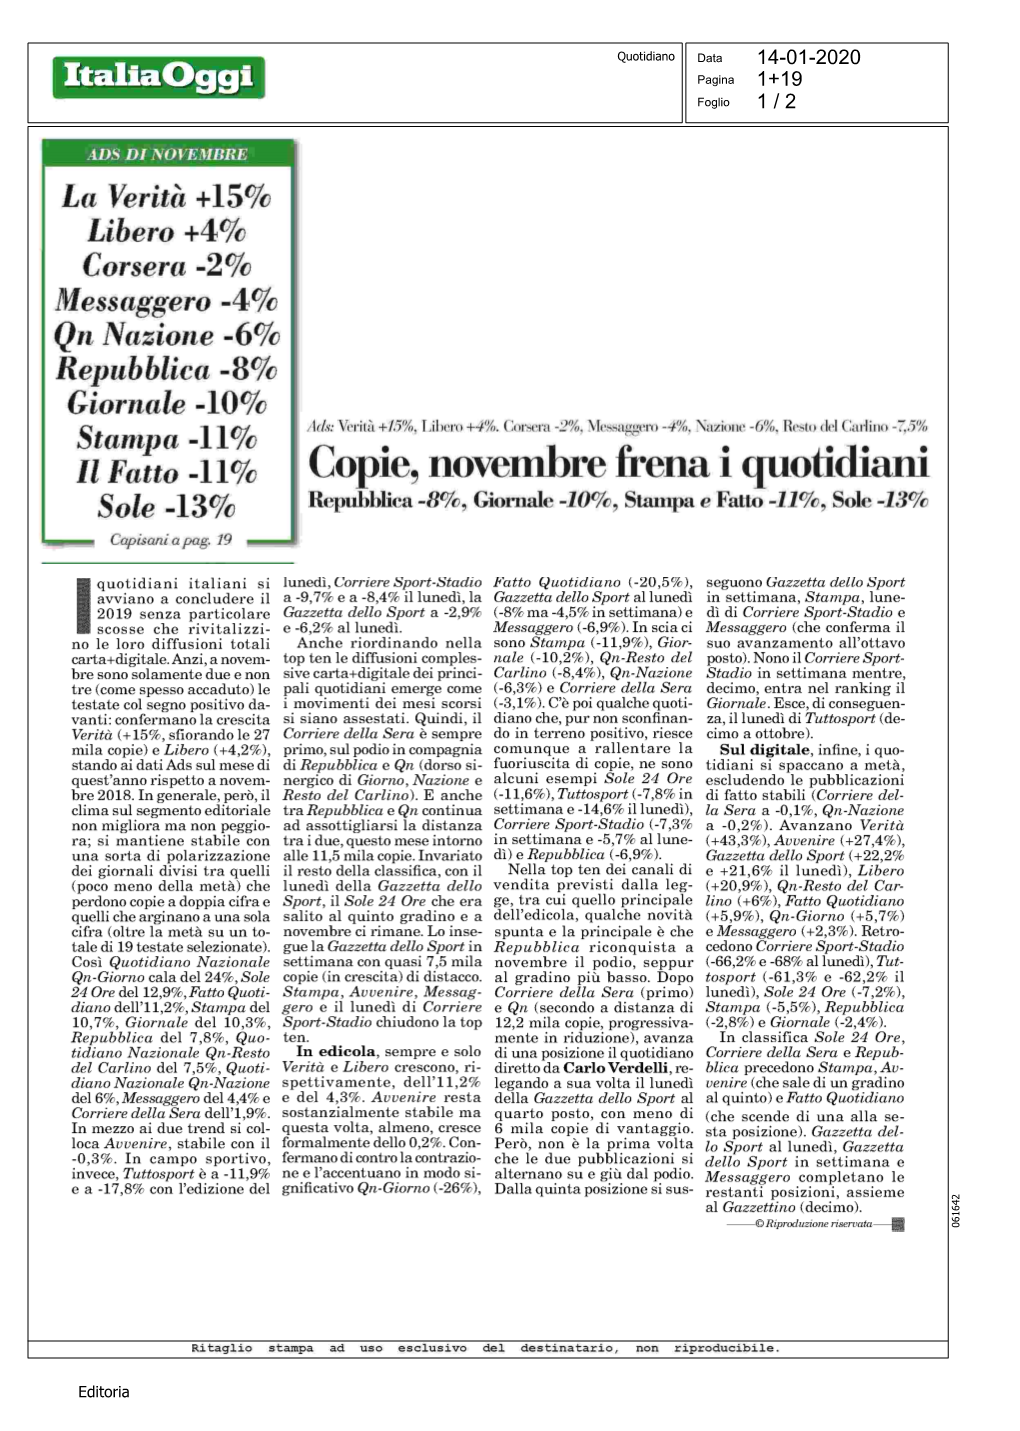 Copie, Novembre Frena I Quotidiani Sole -13% Repubblica -8%, Giornale 10%,Stampa E Fatto 11%,Sole -13% Capisarzt a Pag